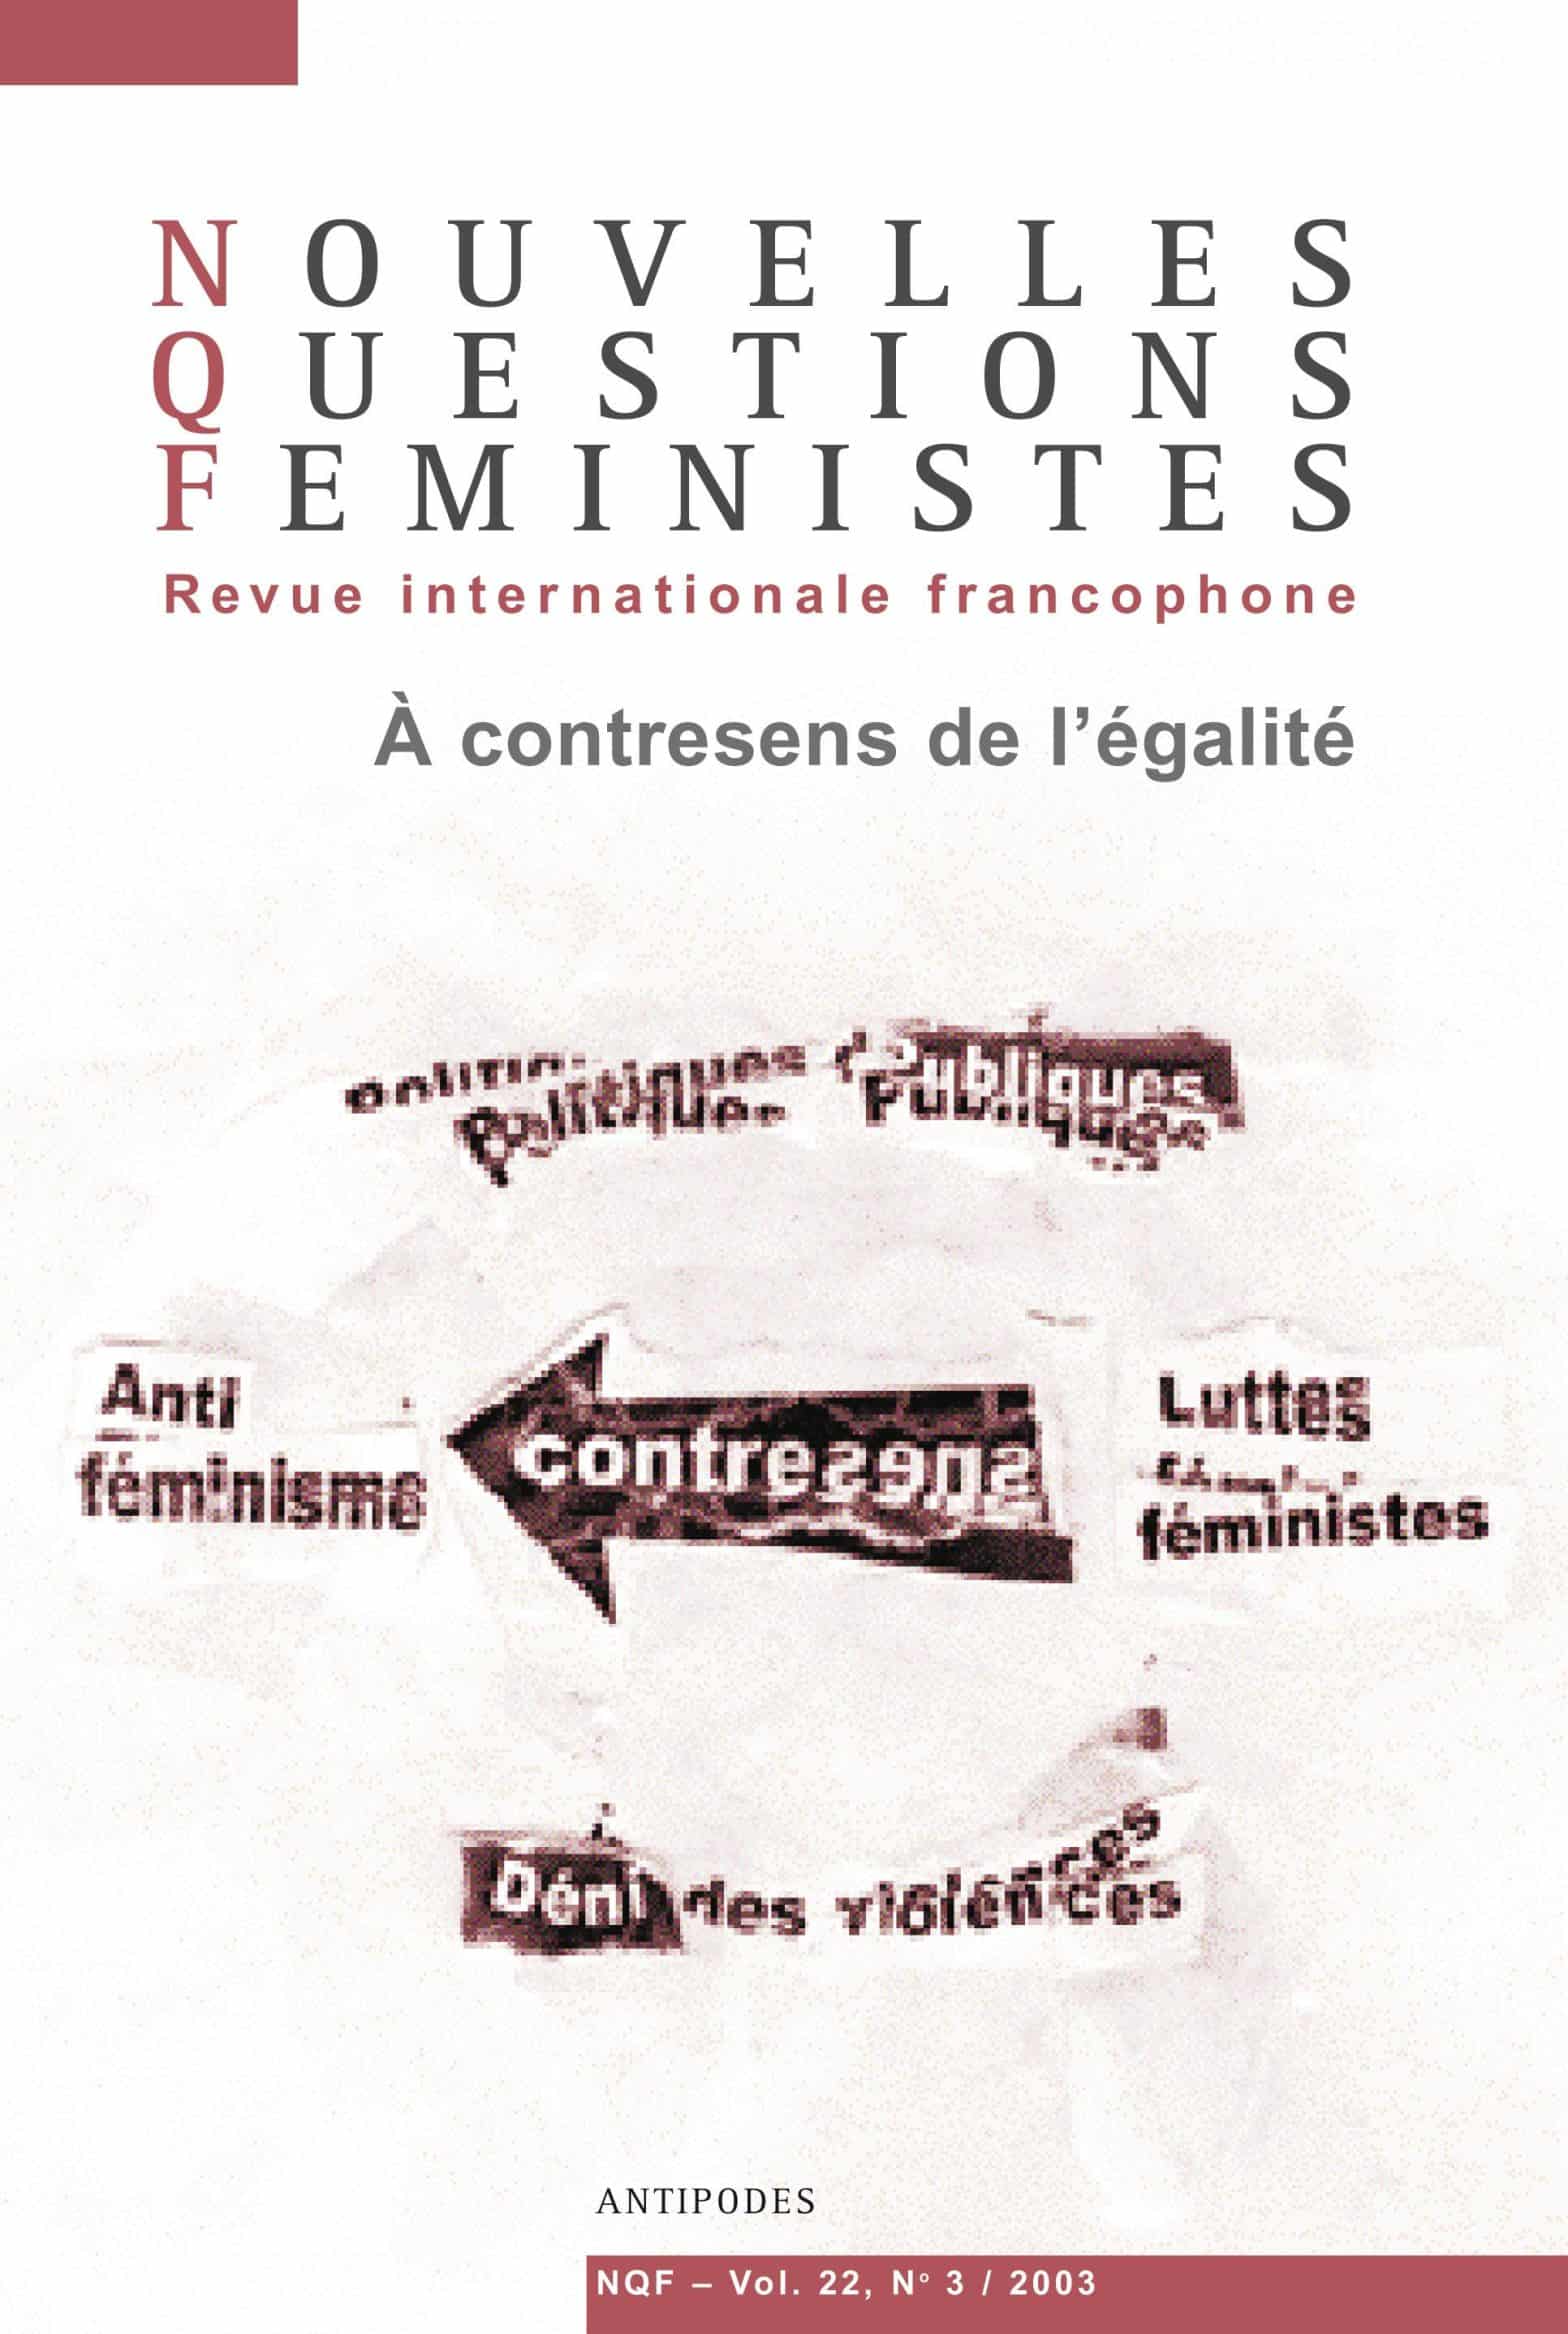 , Informations socialisme: Faire de tout un enjeu féministe : le mouvement féministe argentin – Regard International